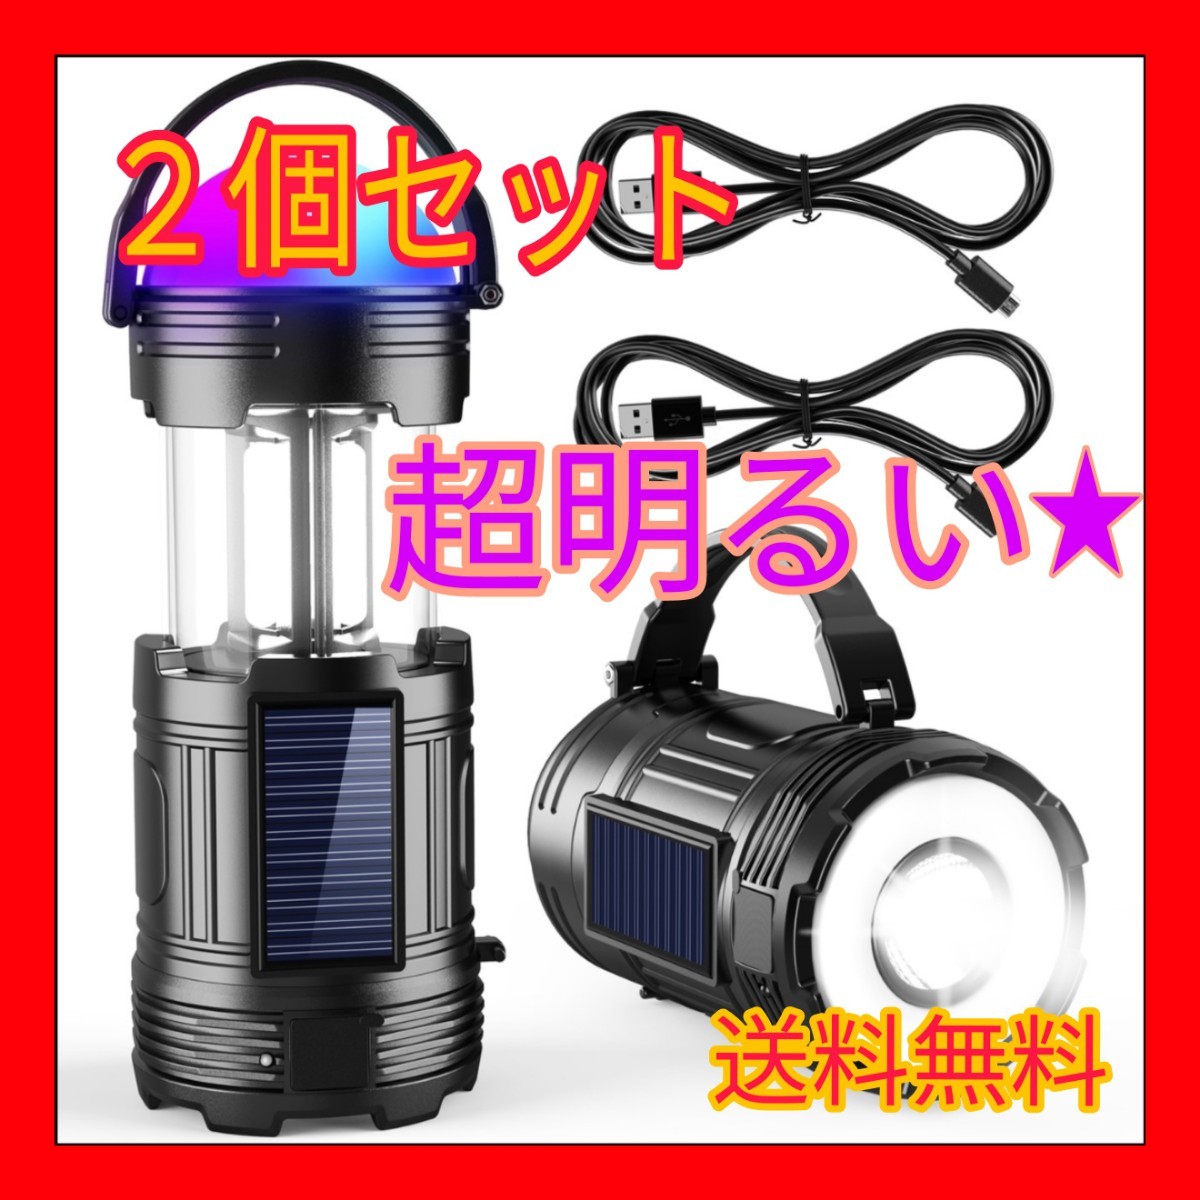 【2個セット】LEDランタン 懐中電灯 アウトドア キャンプ  防災 USB充電 キャンプランタン 高輝度